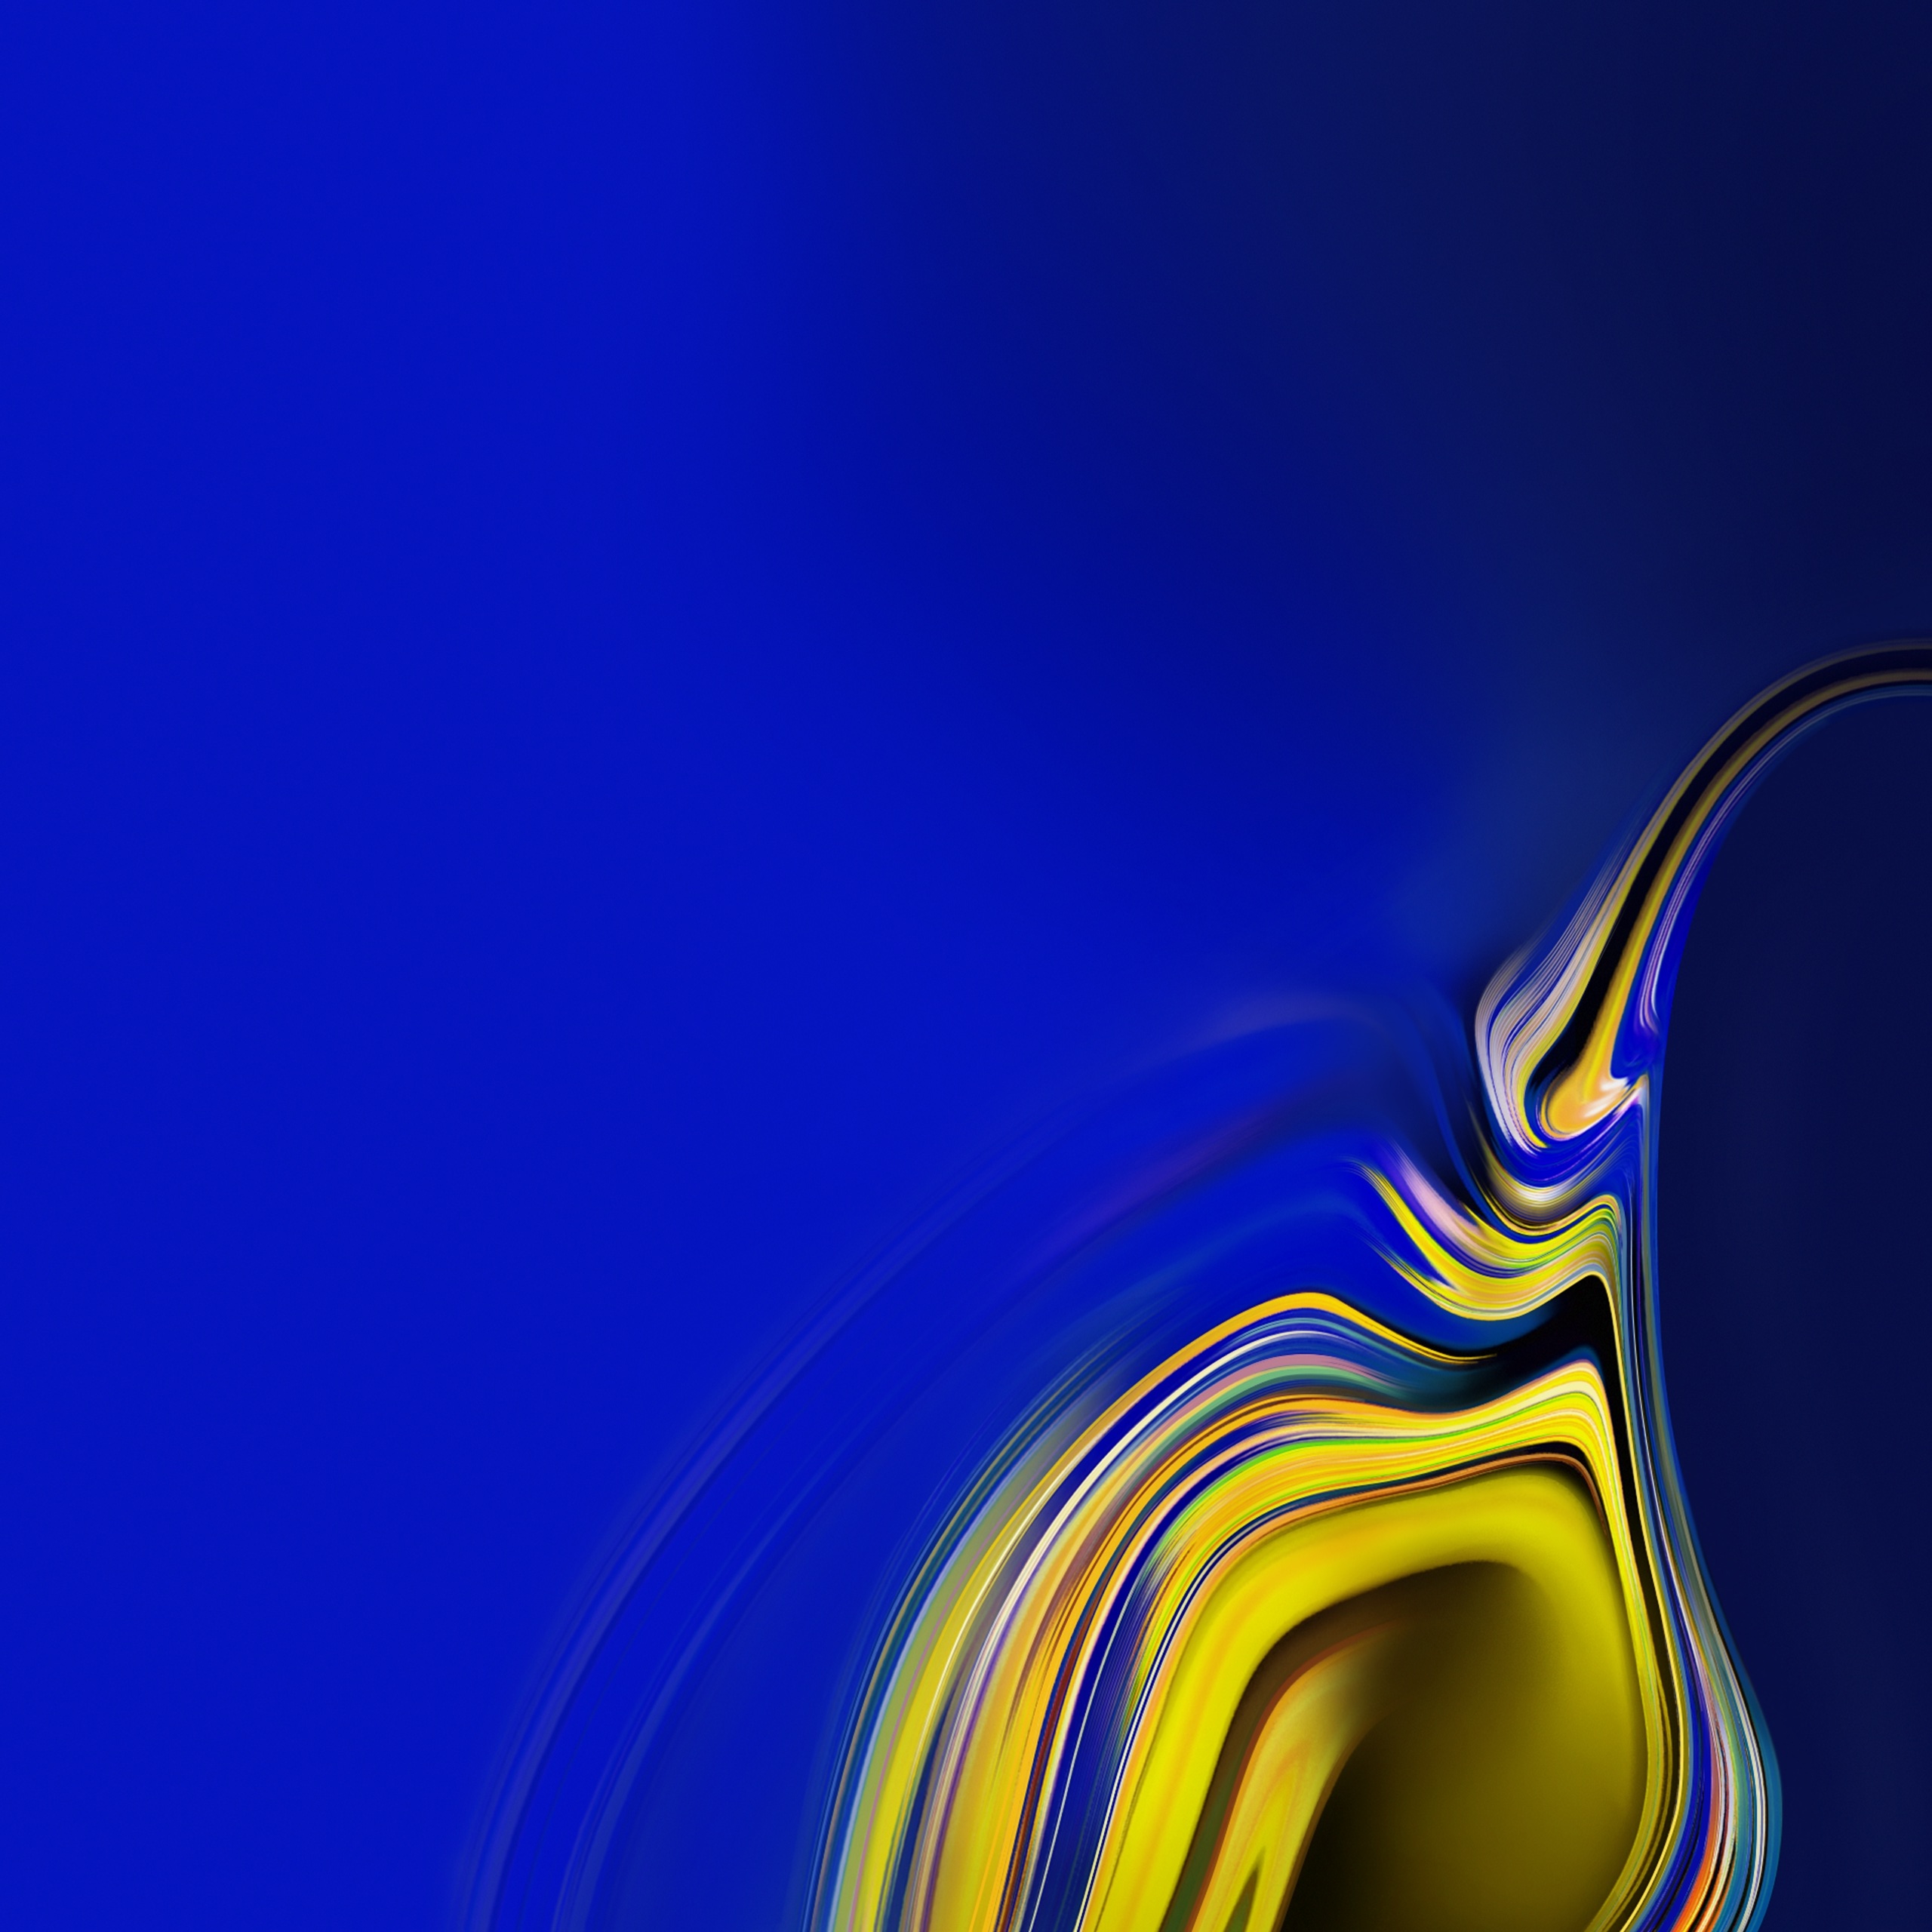 samsung galaxy wallpaper,azul,azul cobalto,amarillo,agua,azul eléctrico